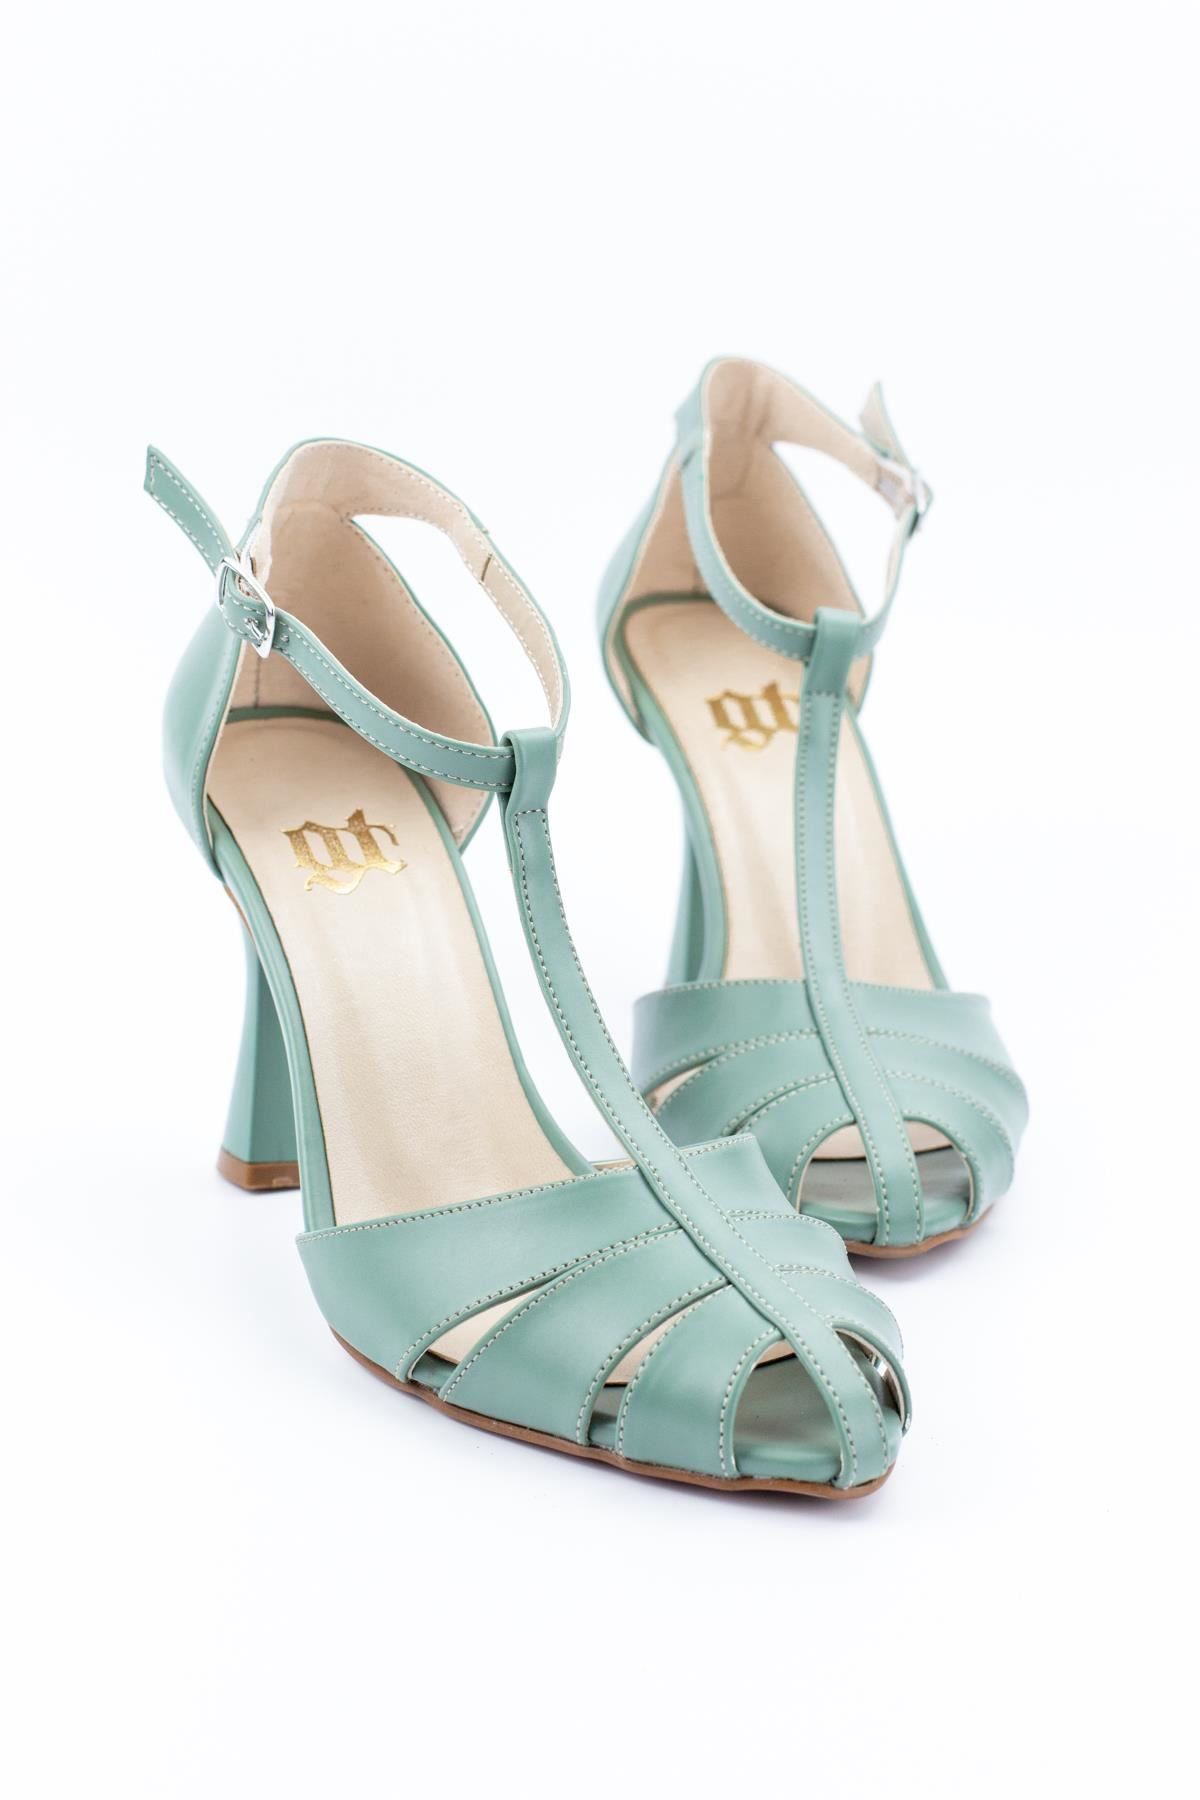 Princess Kadın Klasik Topuklu Ayakkabı Su Yeşili Cilt